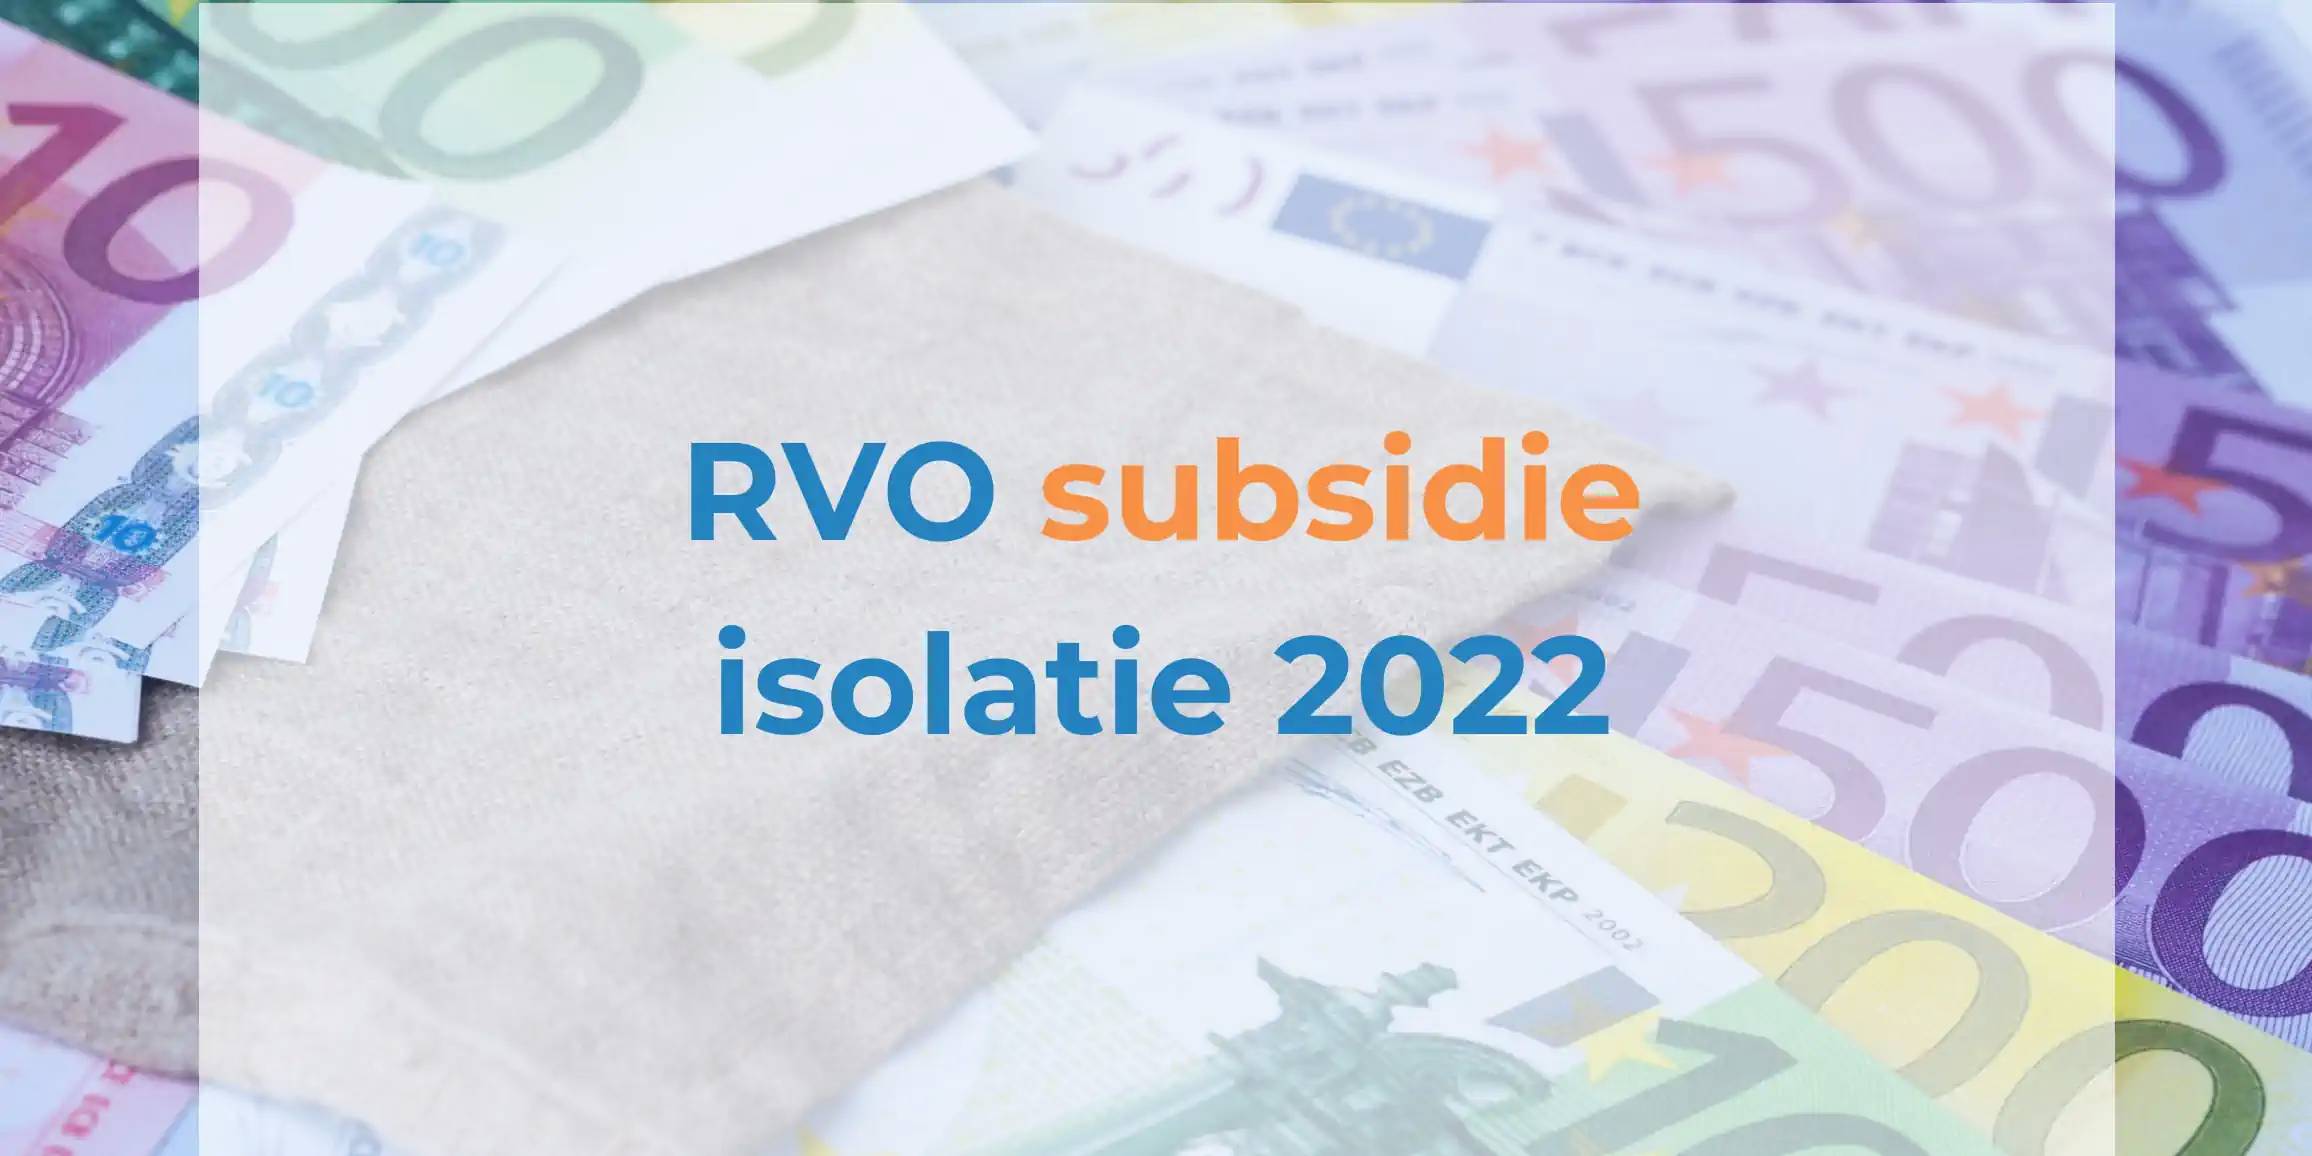 RVO subsidie isolatie 2022